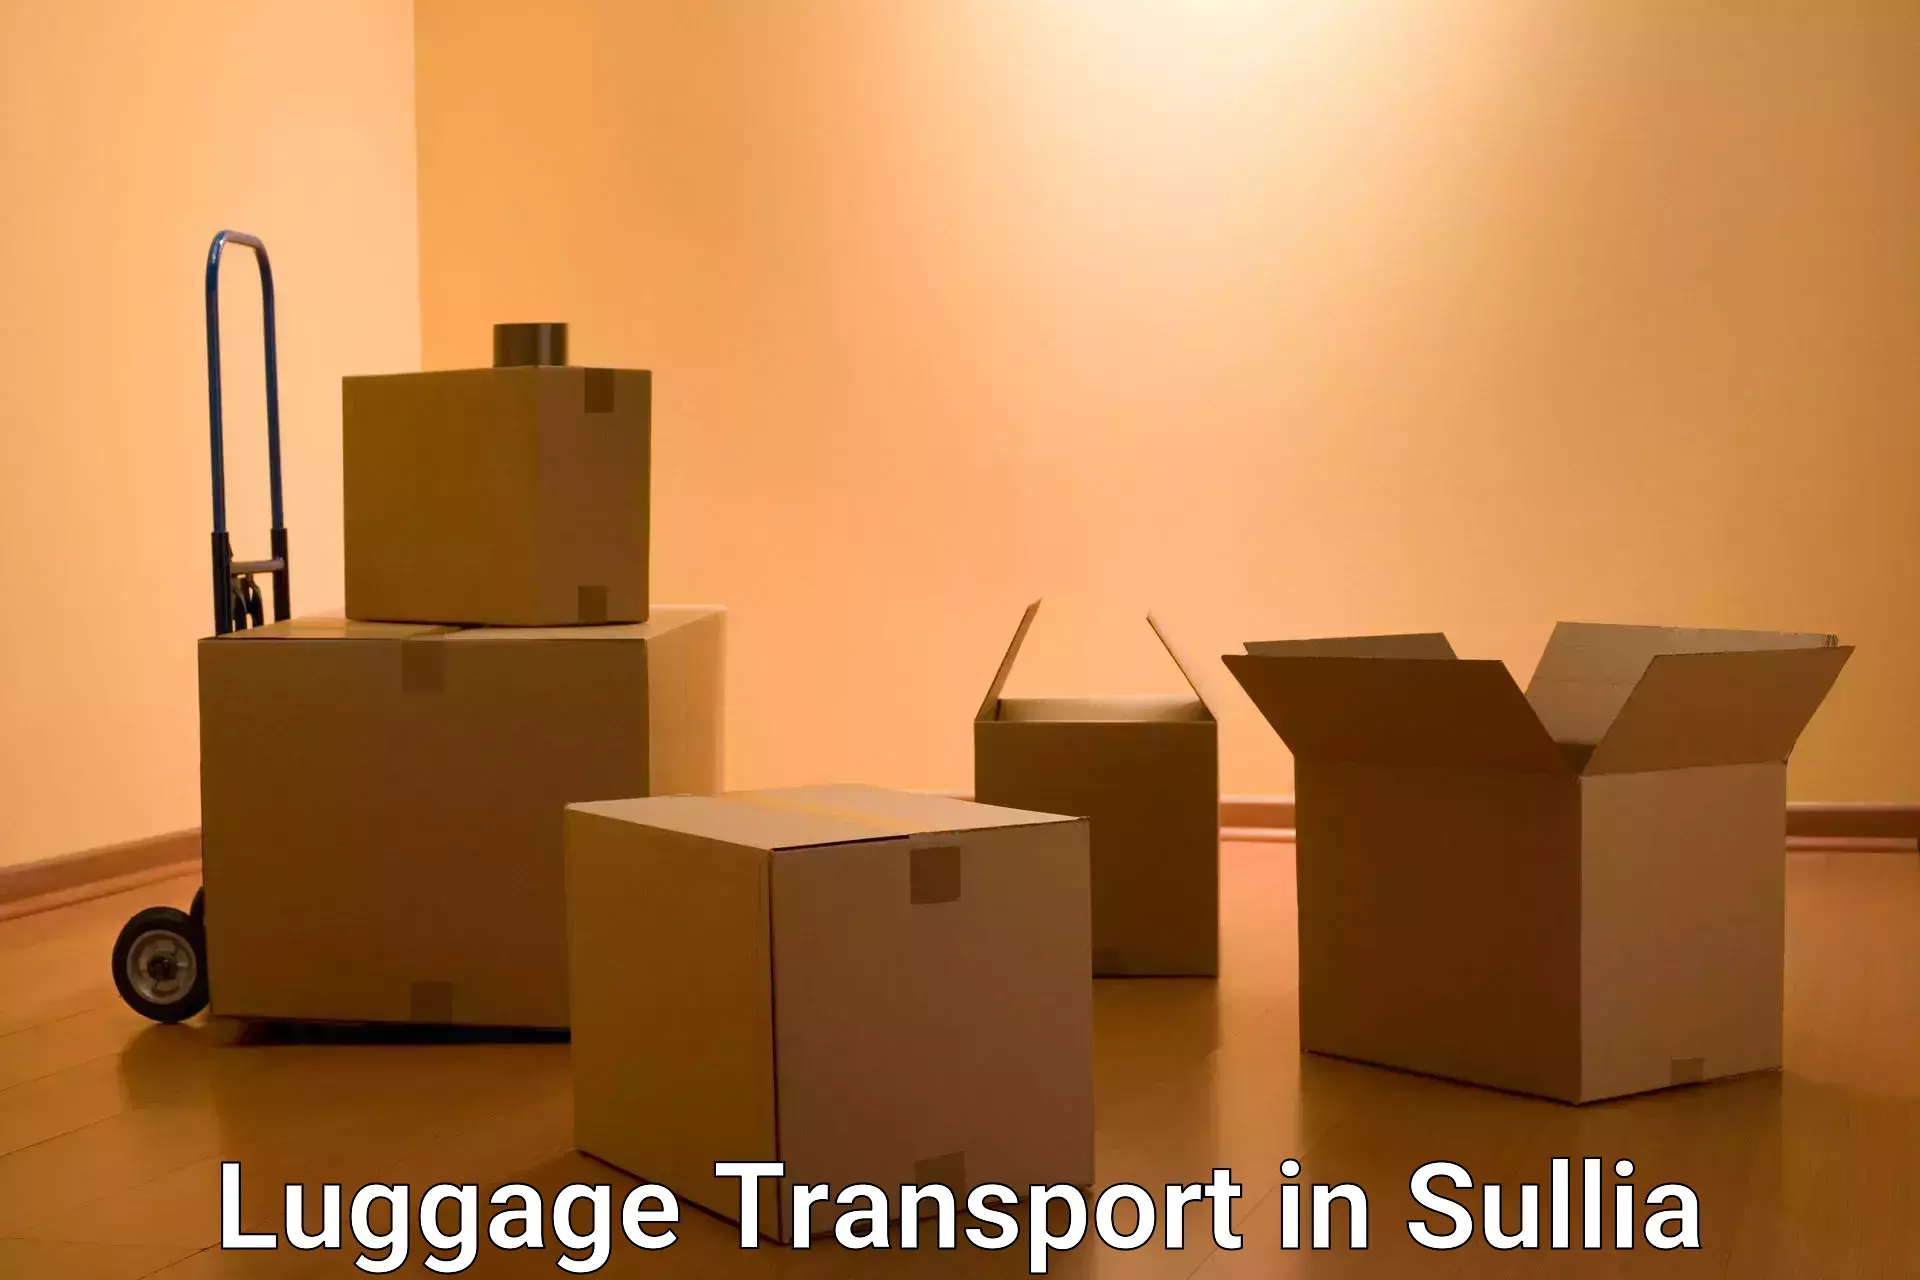 Baggage transport professionals in Sullia